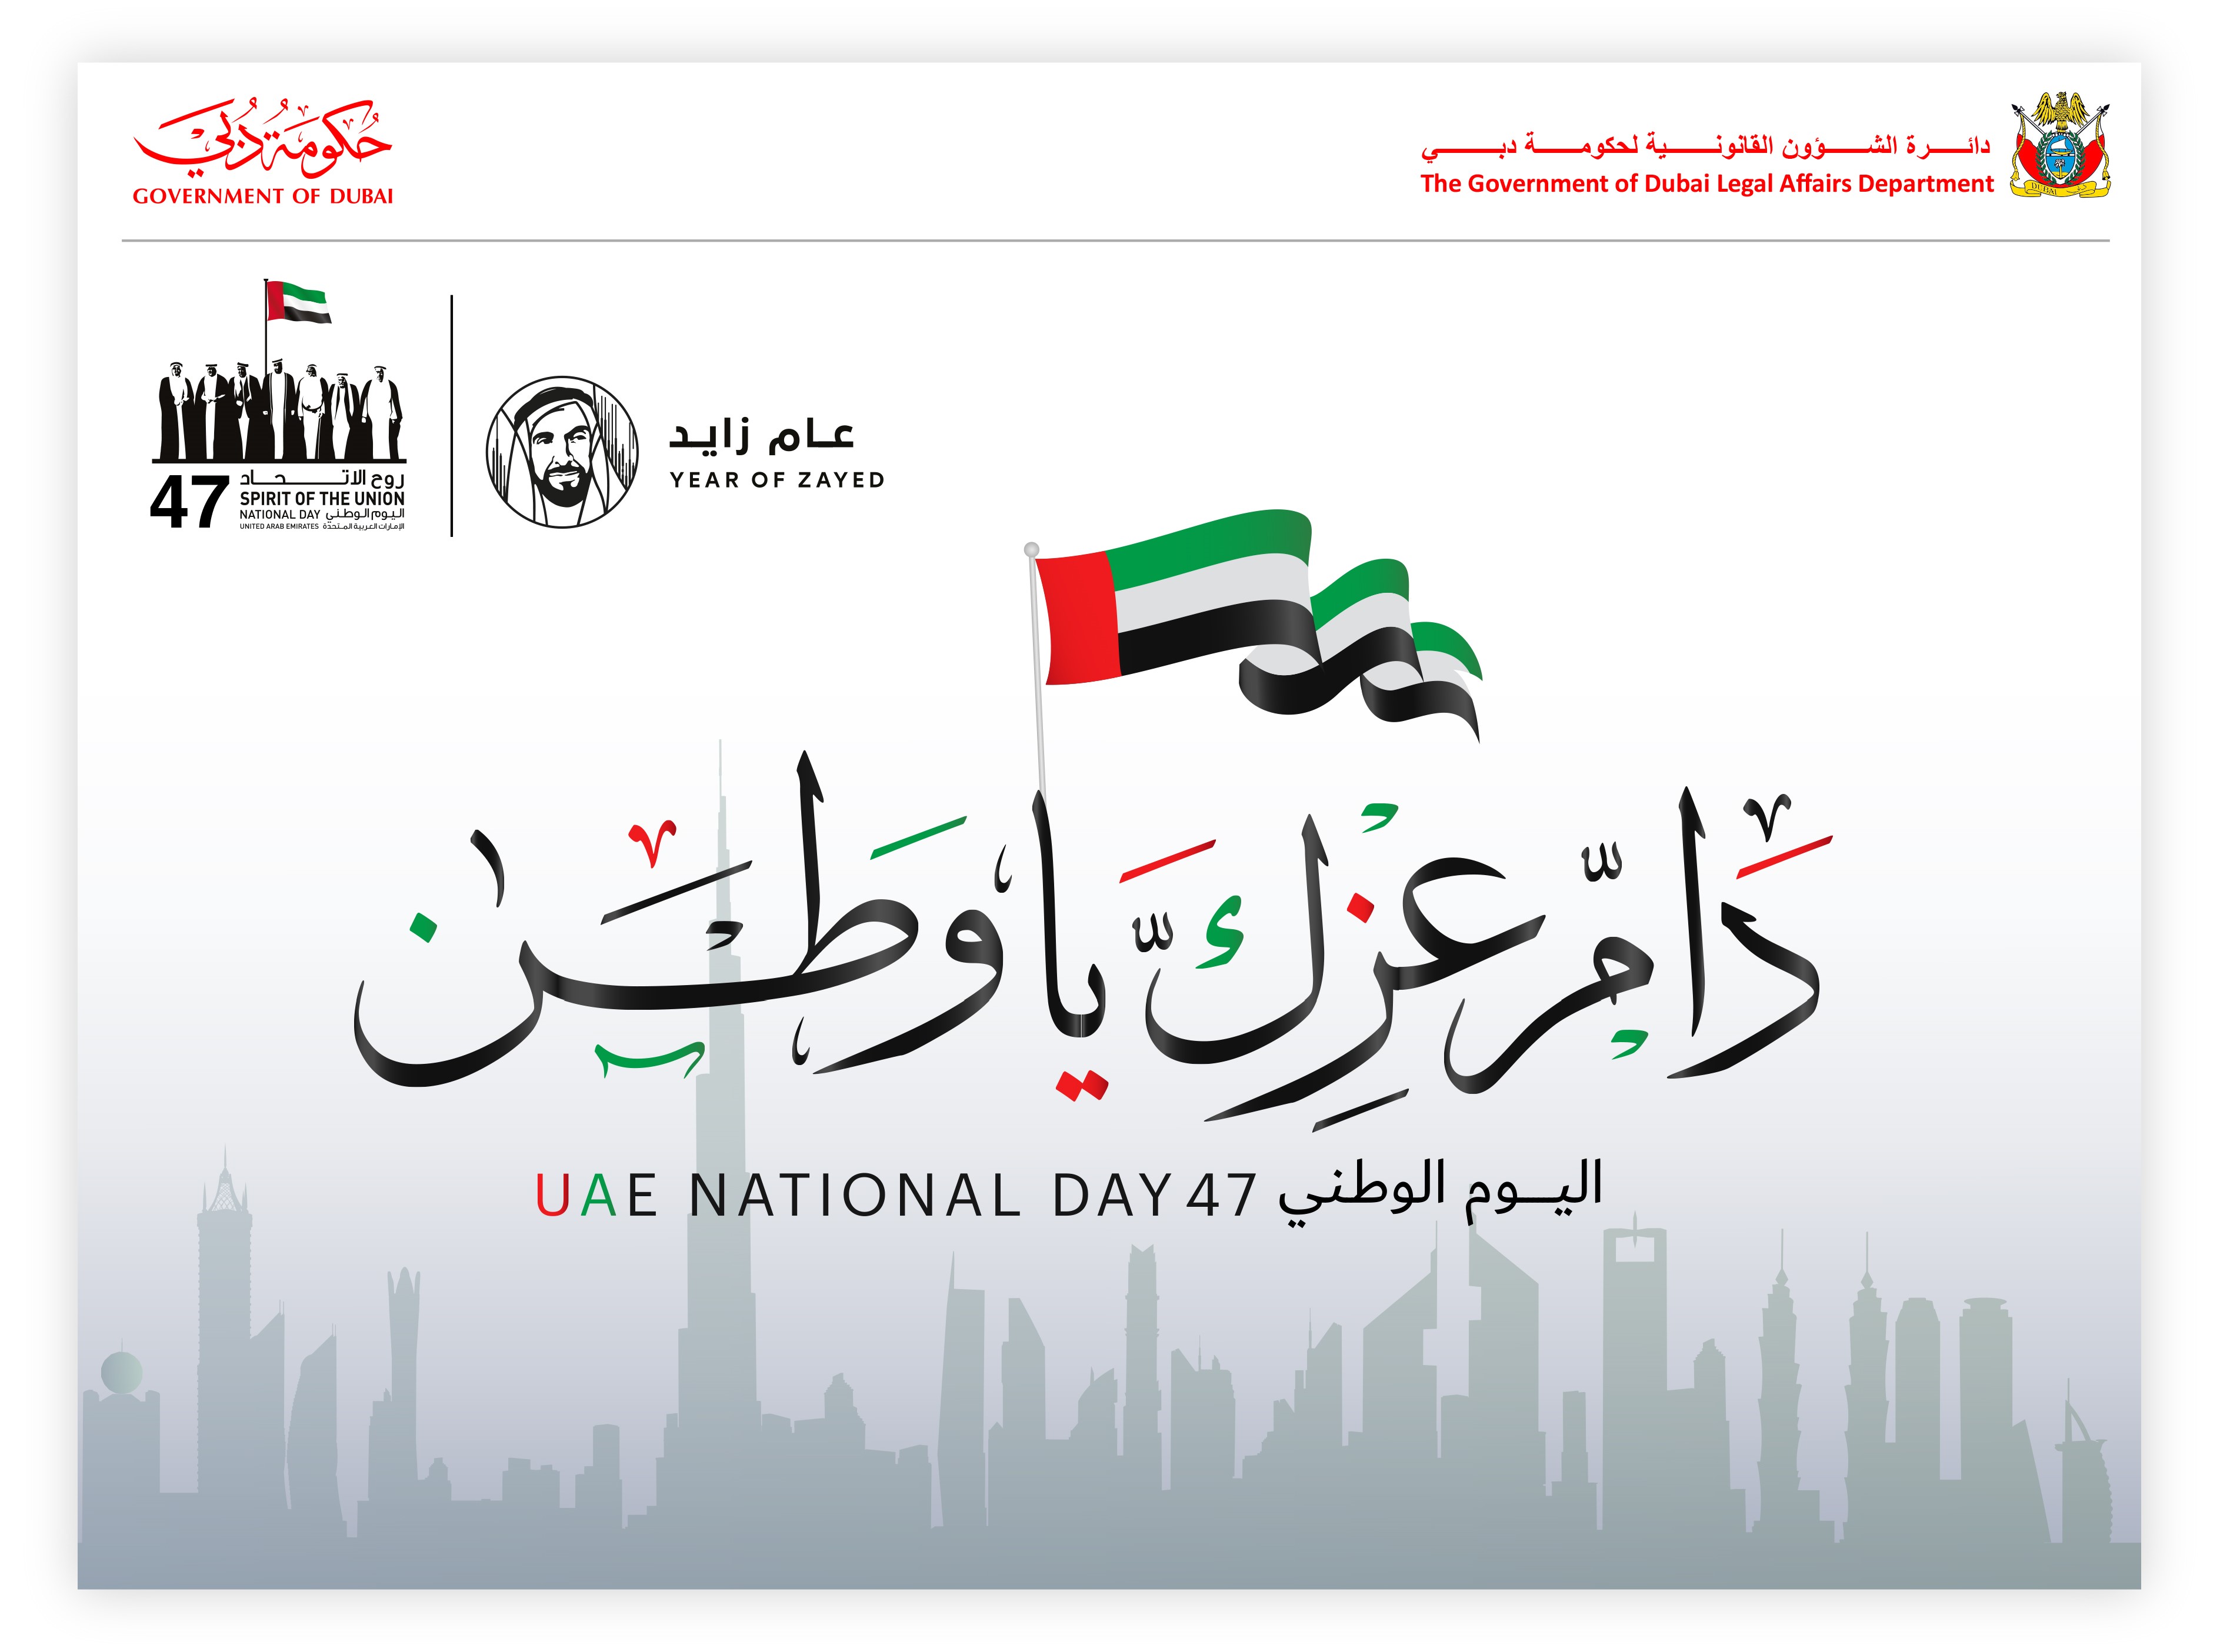 مدير عام قانونية دبي: اليوم الوطني مناسبة وطنية تجسد أسمى معاني الوفاء والانتماء للوطن وقيادته الحكيمة